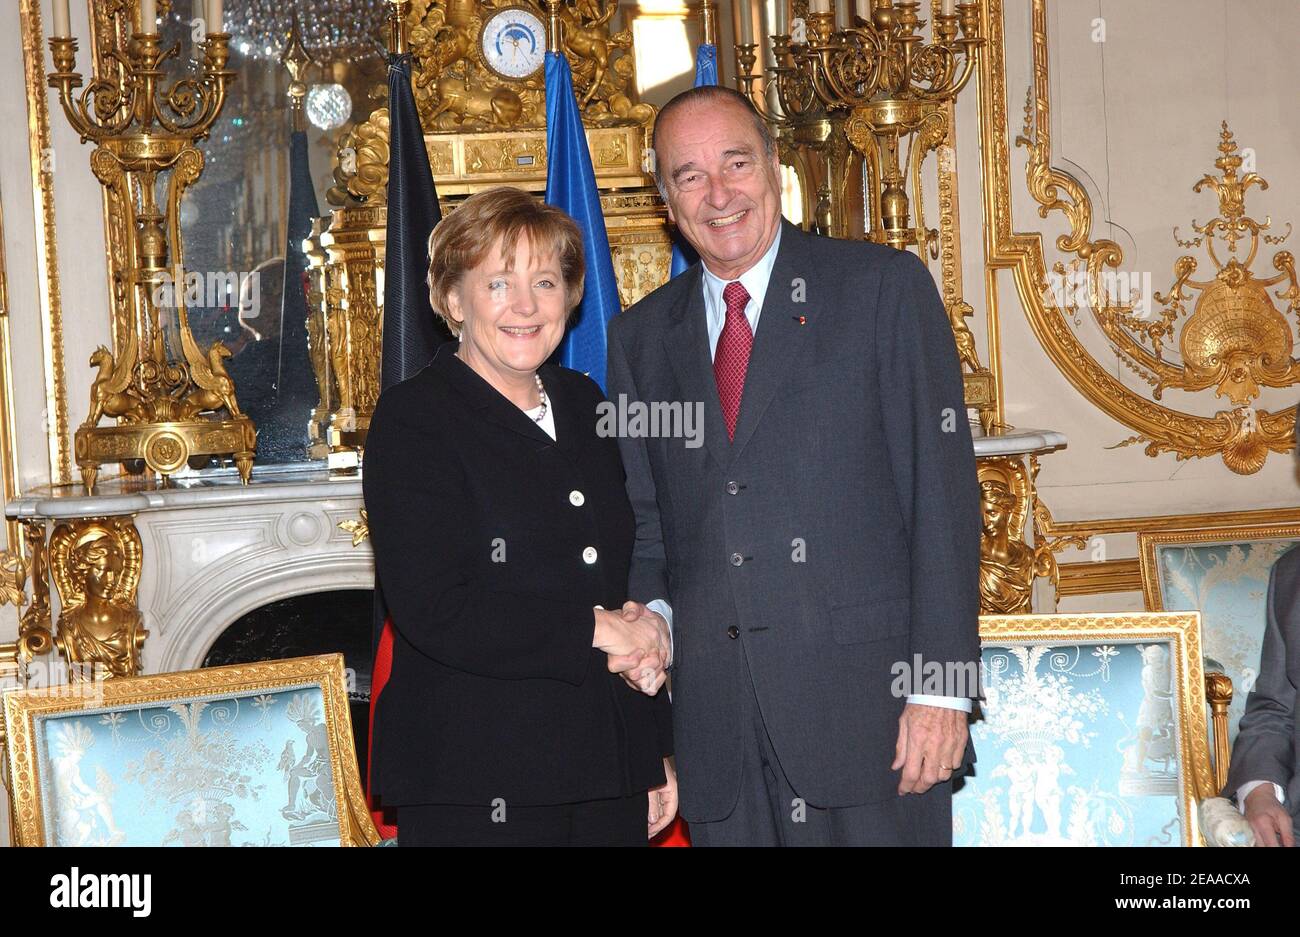 Die neu gewählte deutsche Bundeskanzlerin Angela Merkel (L) und der französische Präsident Jacques Chirac schütteln die Hände, als sie sich am 23. November 2005 im Elysée-Palast in Paris zu Gesprächen treffen. Merkel, die konservative Führerin einer seltenen links-rechts-Koalition in Deutschland, wurde am Dienstag vom bundestag offiziell zur Kanzlerin gewählt. Sie ging in Gespräche mit Chirac, als sie ihren internationalen Bogen als Führer der größten Wirtschaft Europas machte. Paris war ihr erstes ausländisches Ziel als Führer, eine Wahl, die als neue Bestätigung der Stärke der deutsch-französischen Beziehungen im Herzen des europäischen Unio gesehen wurde Stockfoto